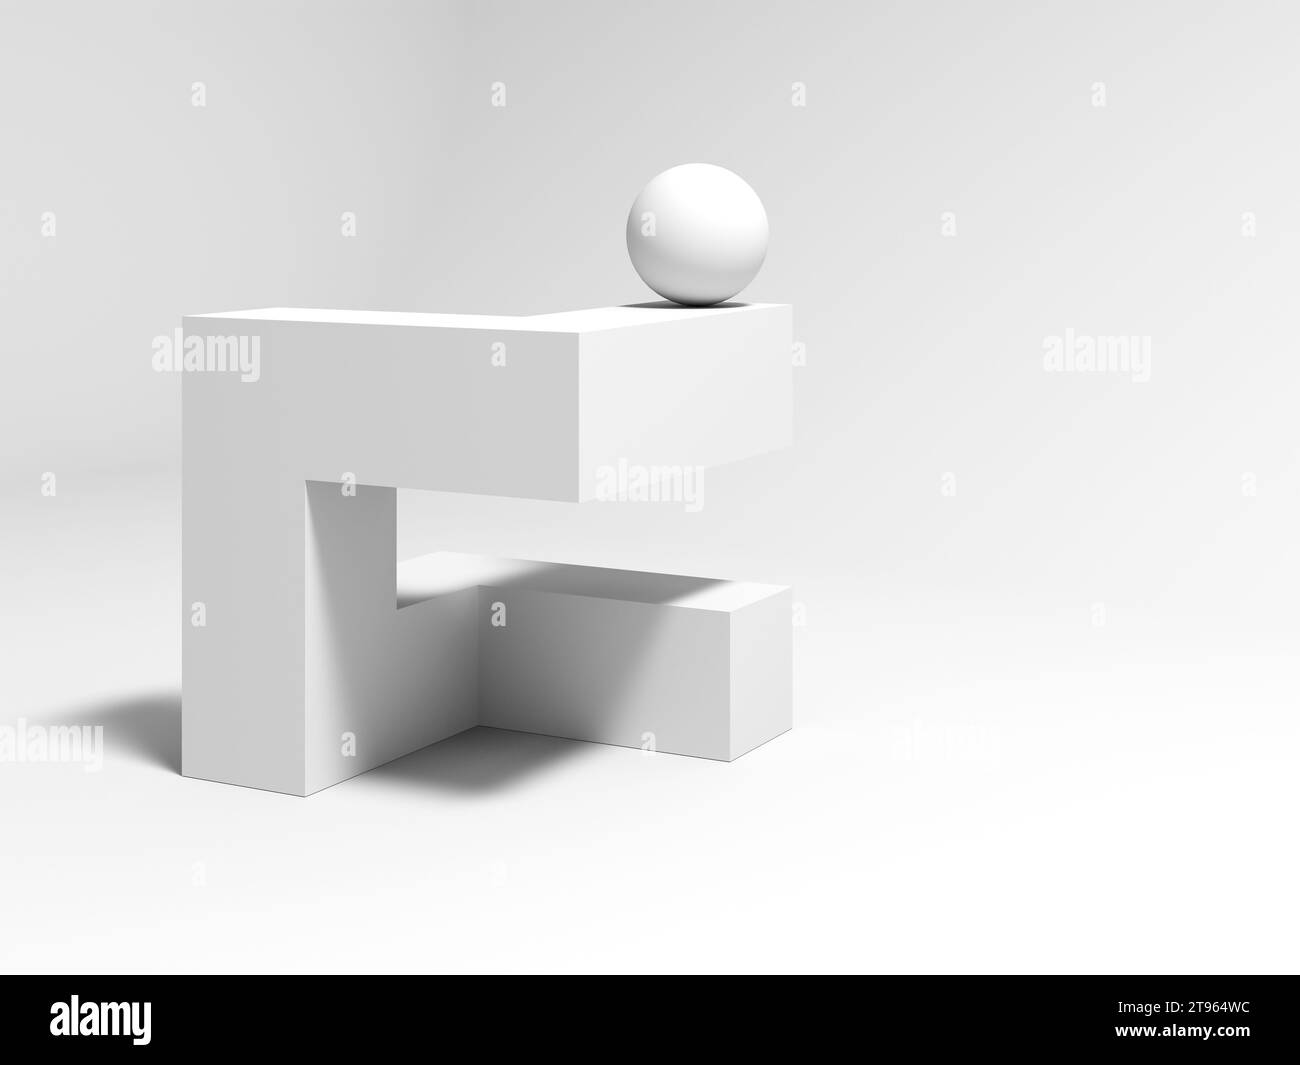 Installation géométrique blanche abstraite avec une sphère posée sur un objet cubique, illustration de rendu 3D. Banque D'Images